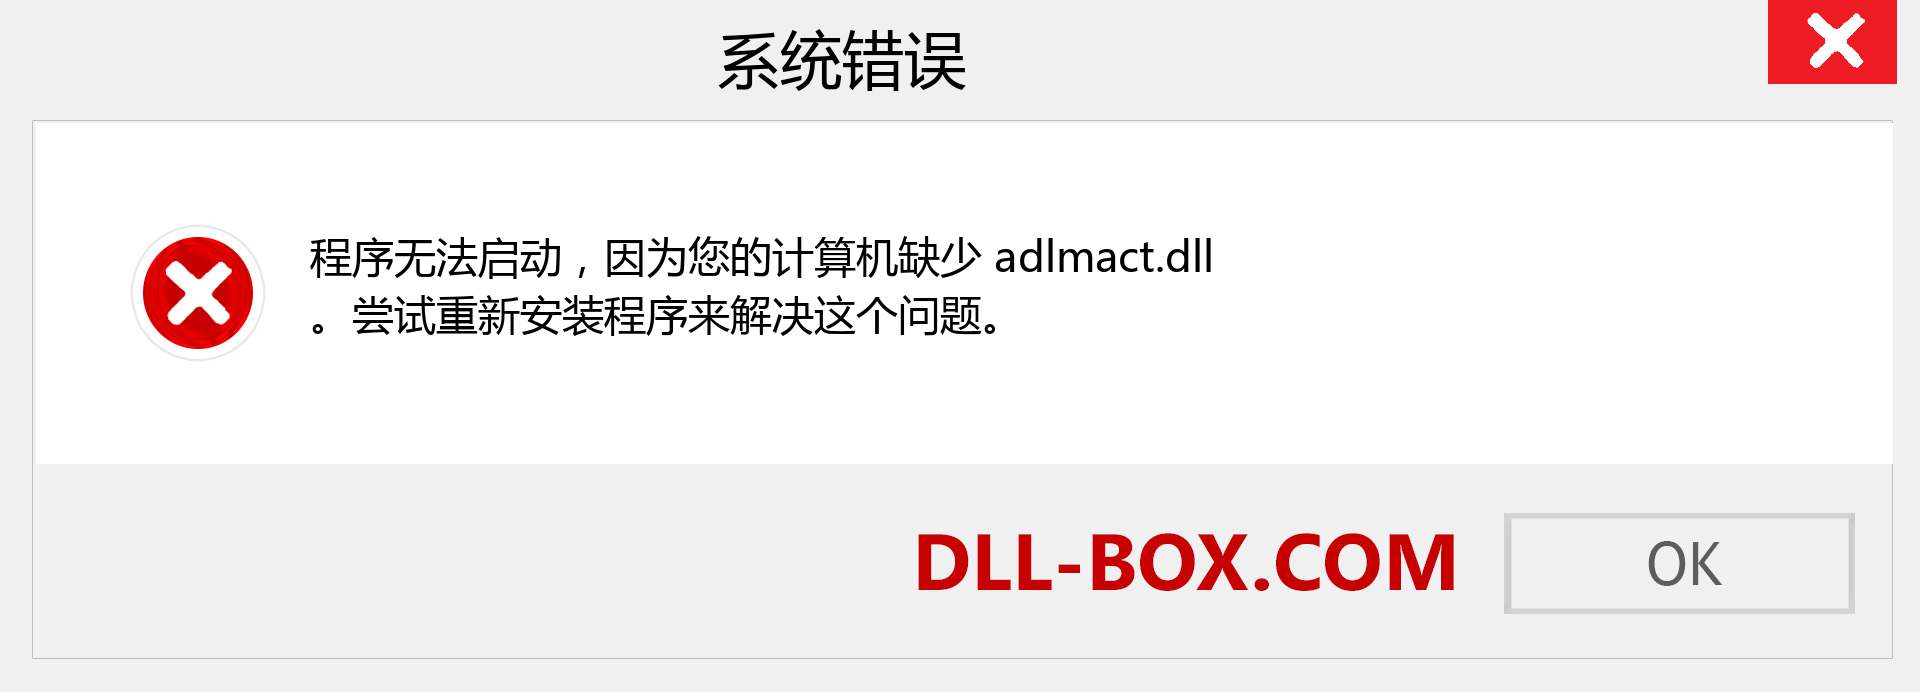 adlmact.dll 文件丢失？。 适用于 Windows 7、8、10 的下载 - 修复 Windows、照片、图像上的 adlmact dll 丢失错误